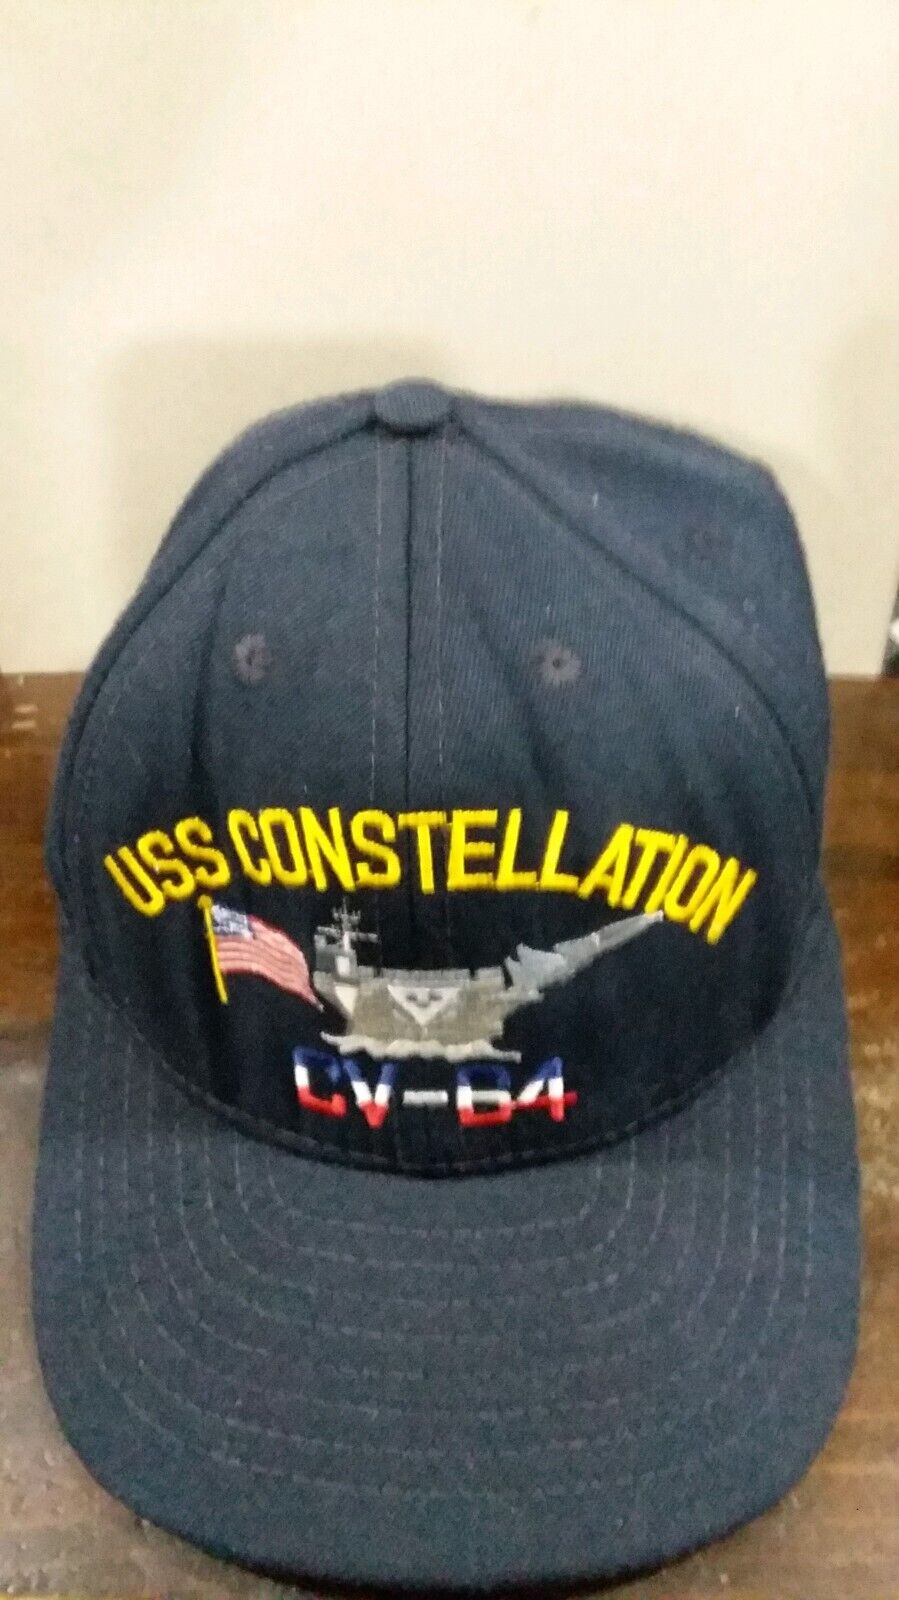 USS Constellation CV-64 Navy Ship US Military VTG Snapback Blue Hat Cap